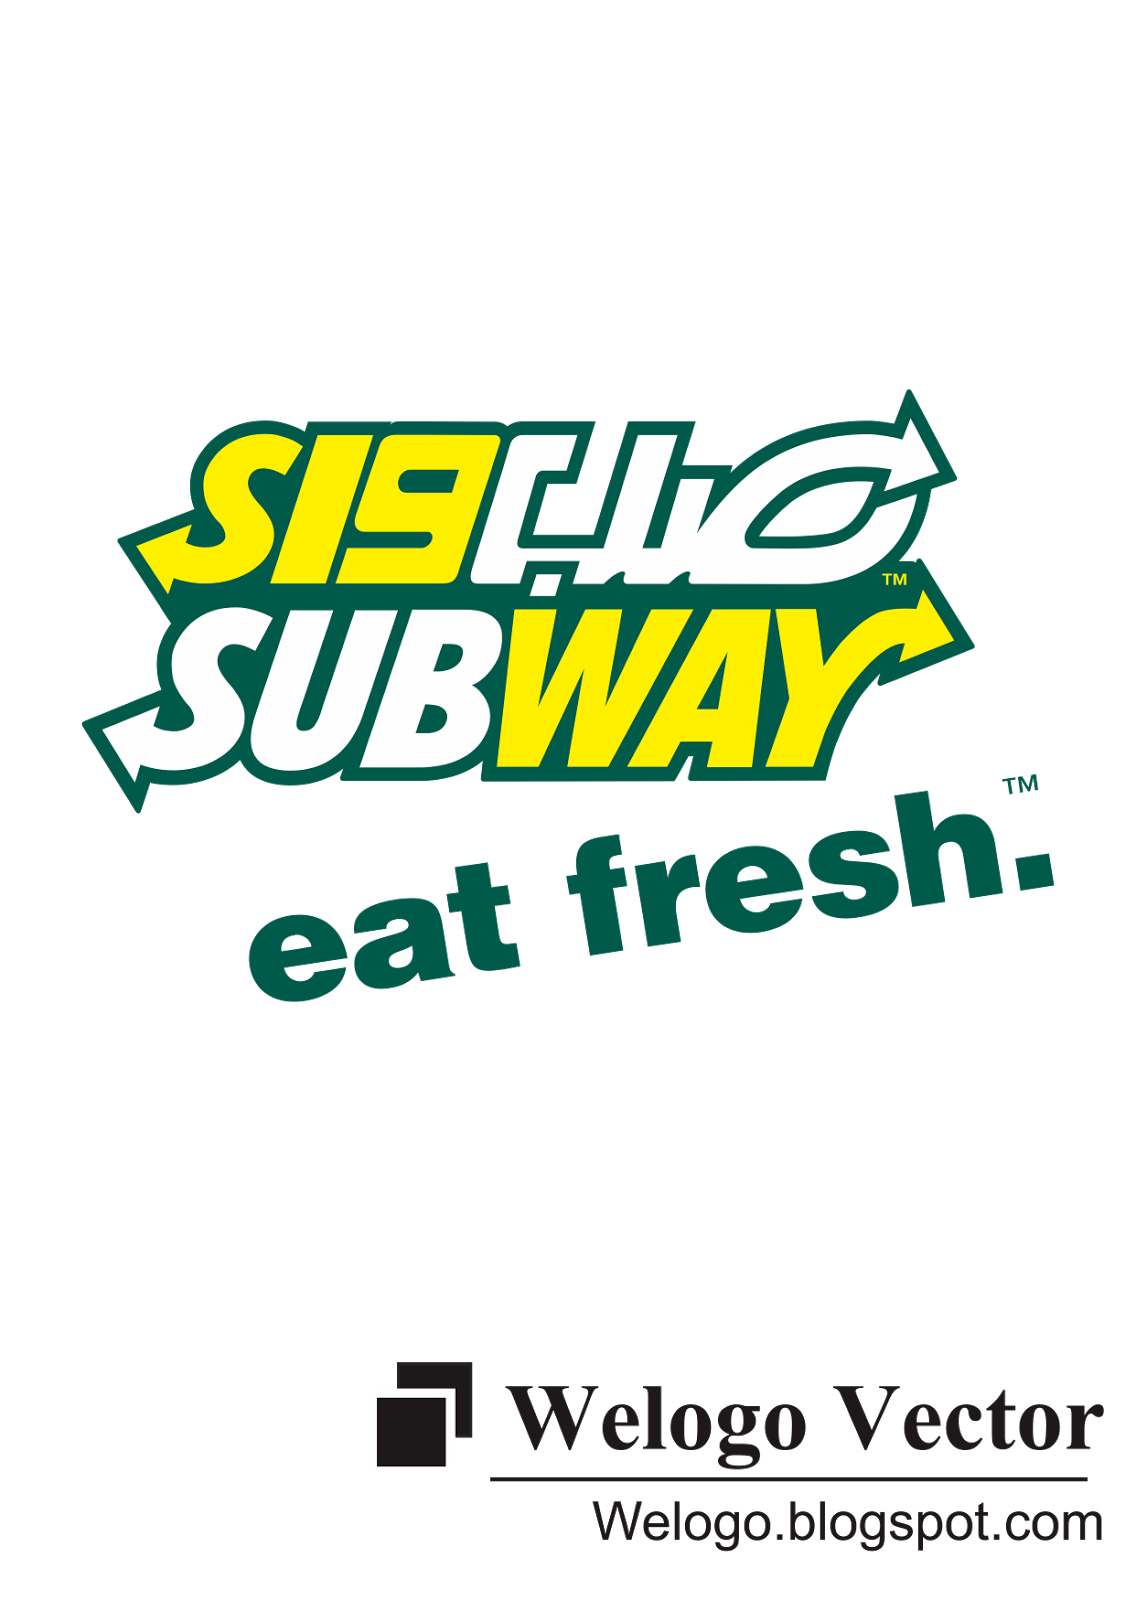 Name : Subway Logo Vector Des